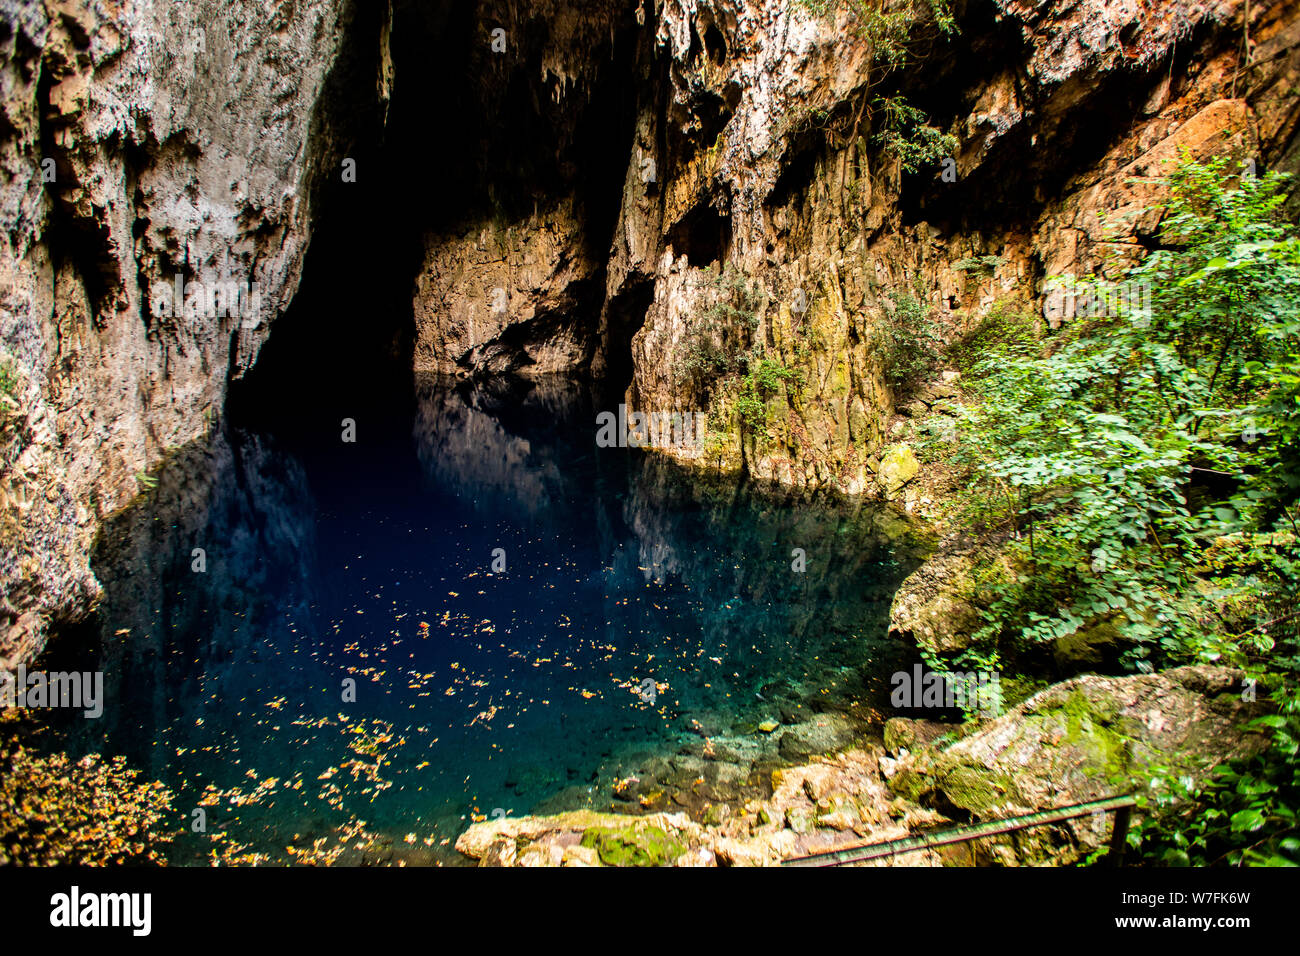 Chinhoyi Caves, Zimbabwe. Limestone and dolomite caves situated about 9 kilometers northwest of Chinhoyi Stock Photo